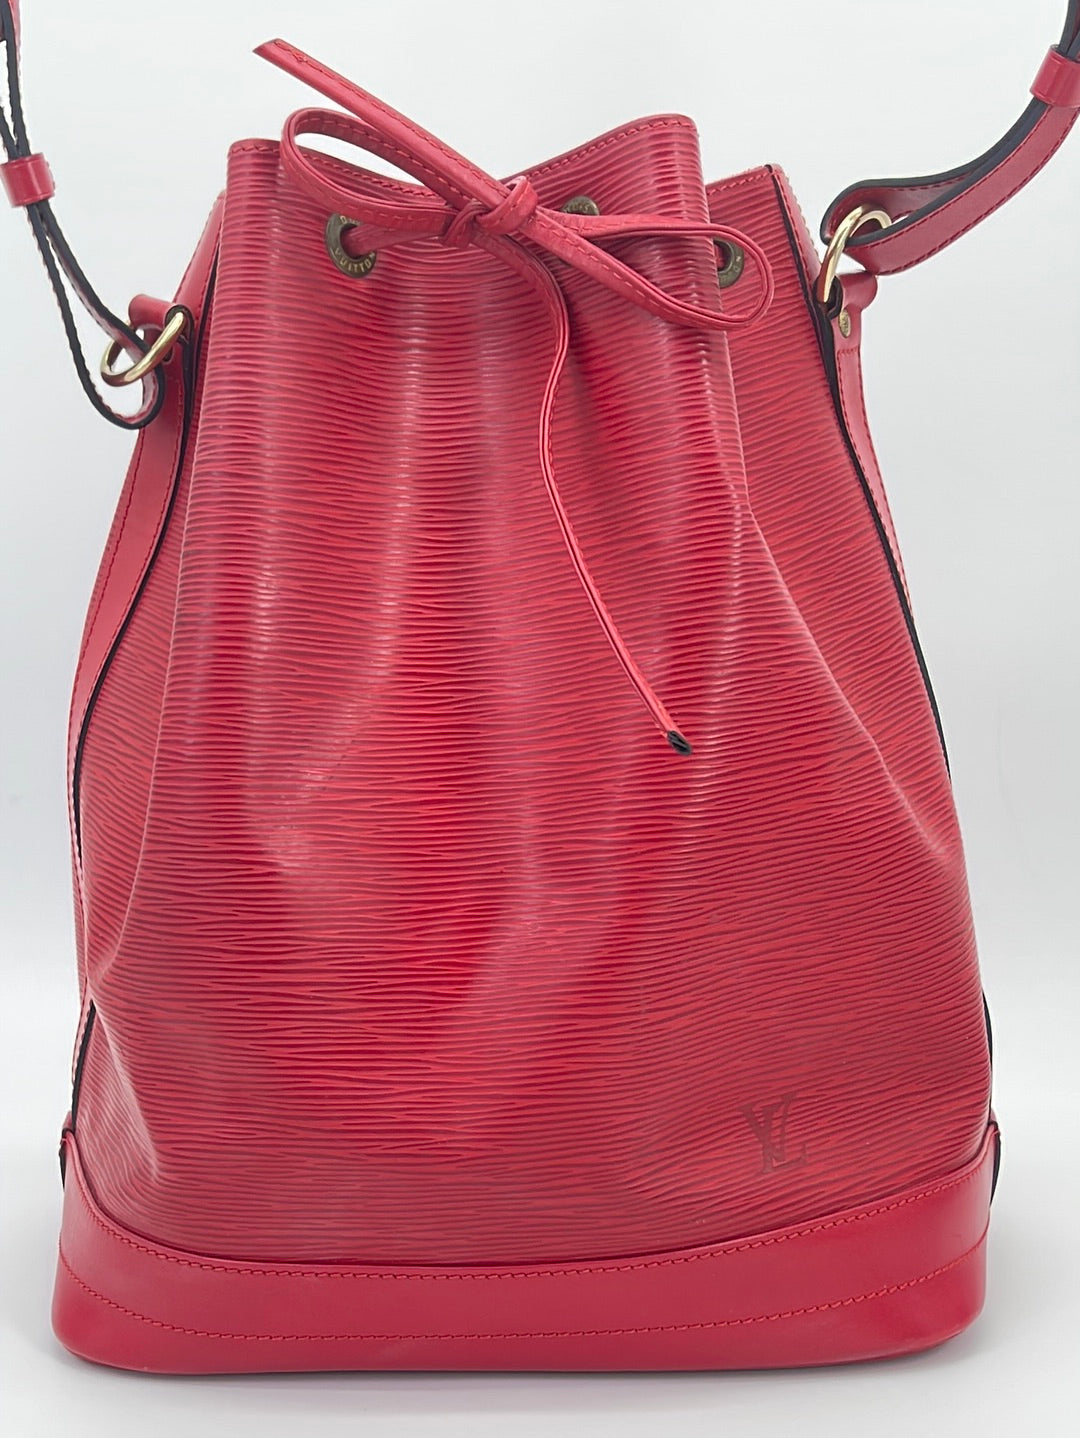 Louis Vuitton Noé PM Shoulder Bag in Red & Black EPI Leather, Gold Hardware